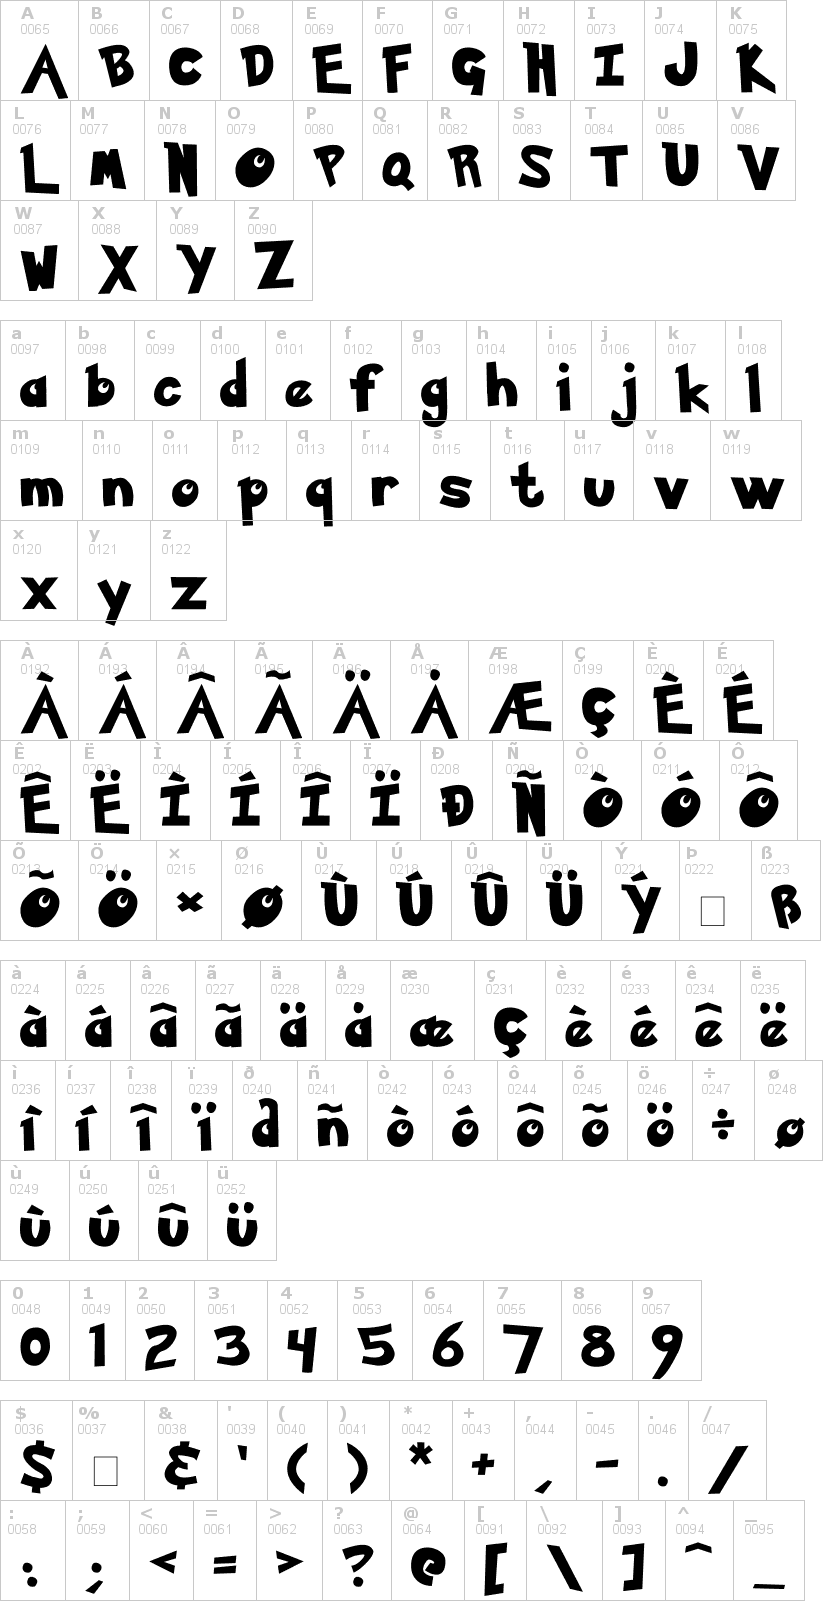 Lettere dell'alfabeto del font pokemon con le quali è possibile realizzare adesivi prespaziati